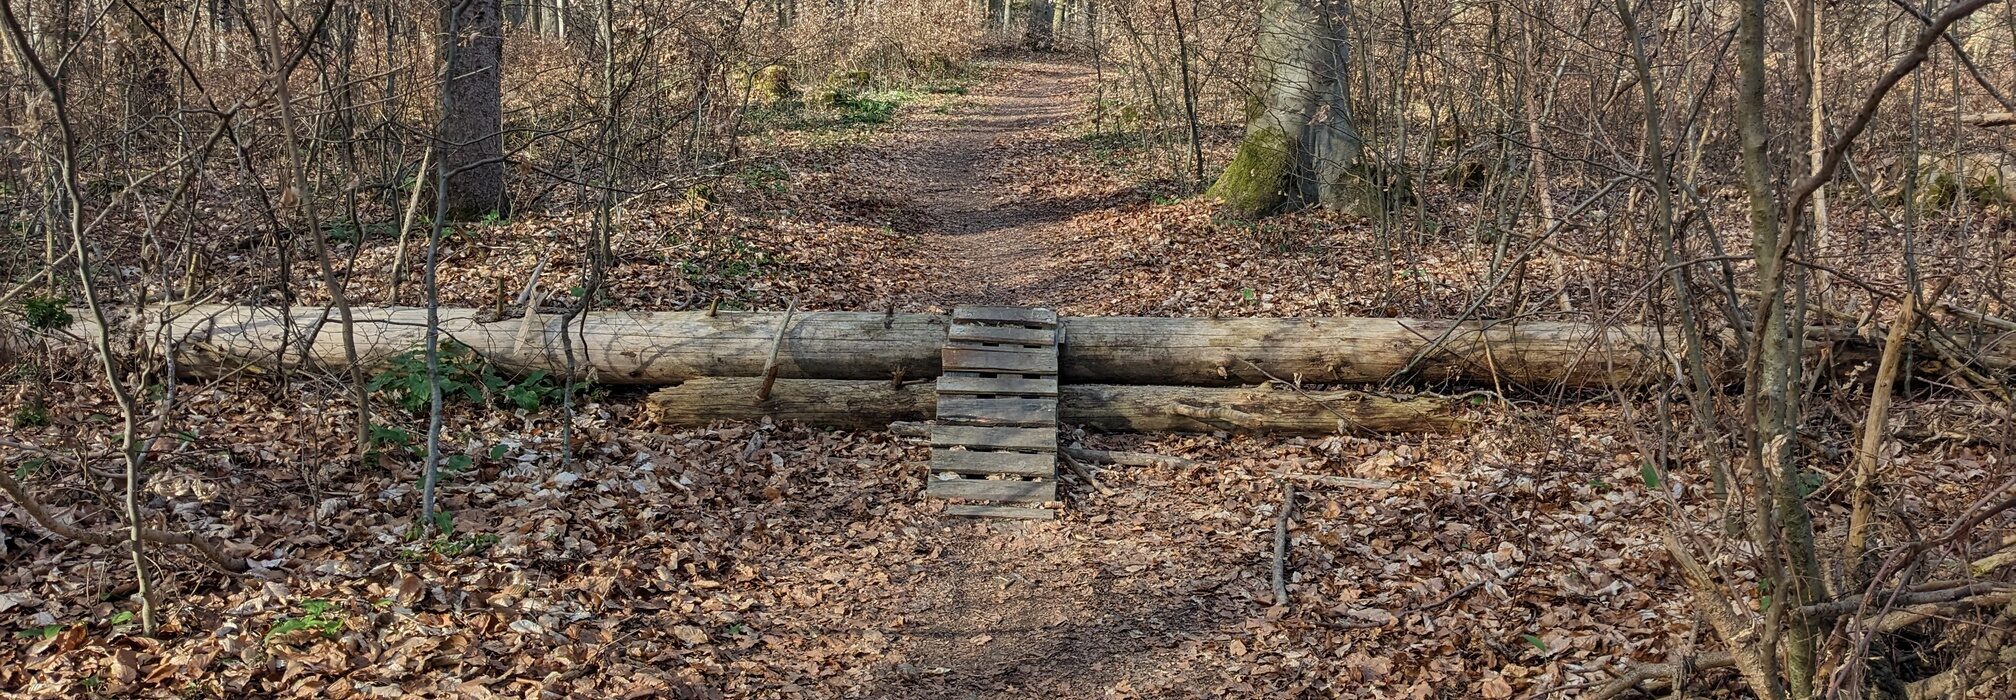 Trail durch einen Wald. Eine kleine Rampe führt über einen im Weg liegenden Baumstamm.